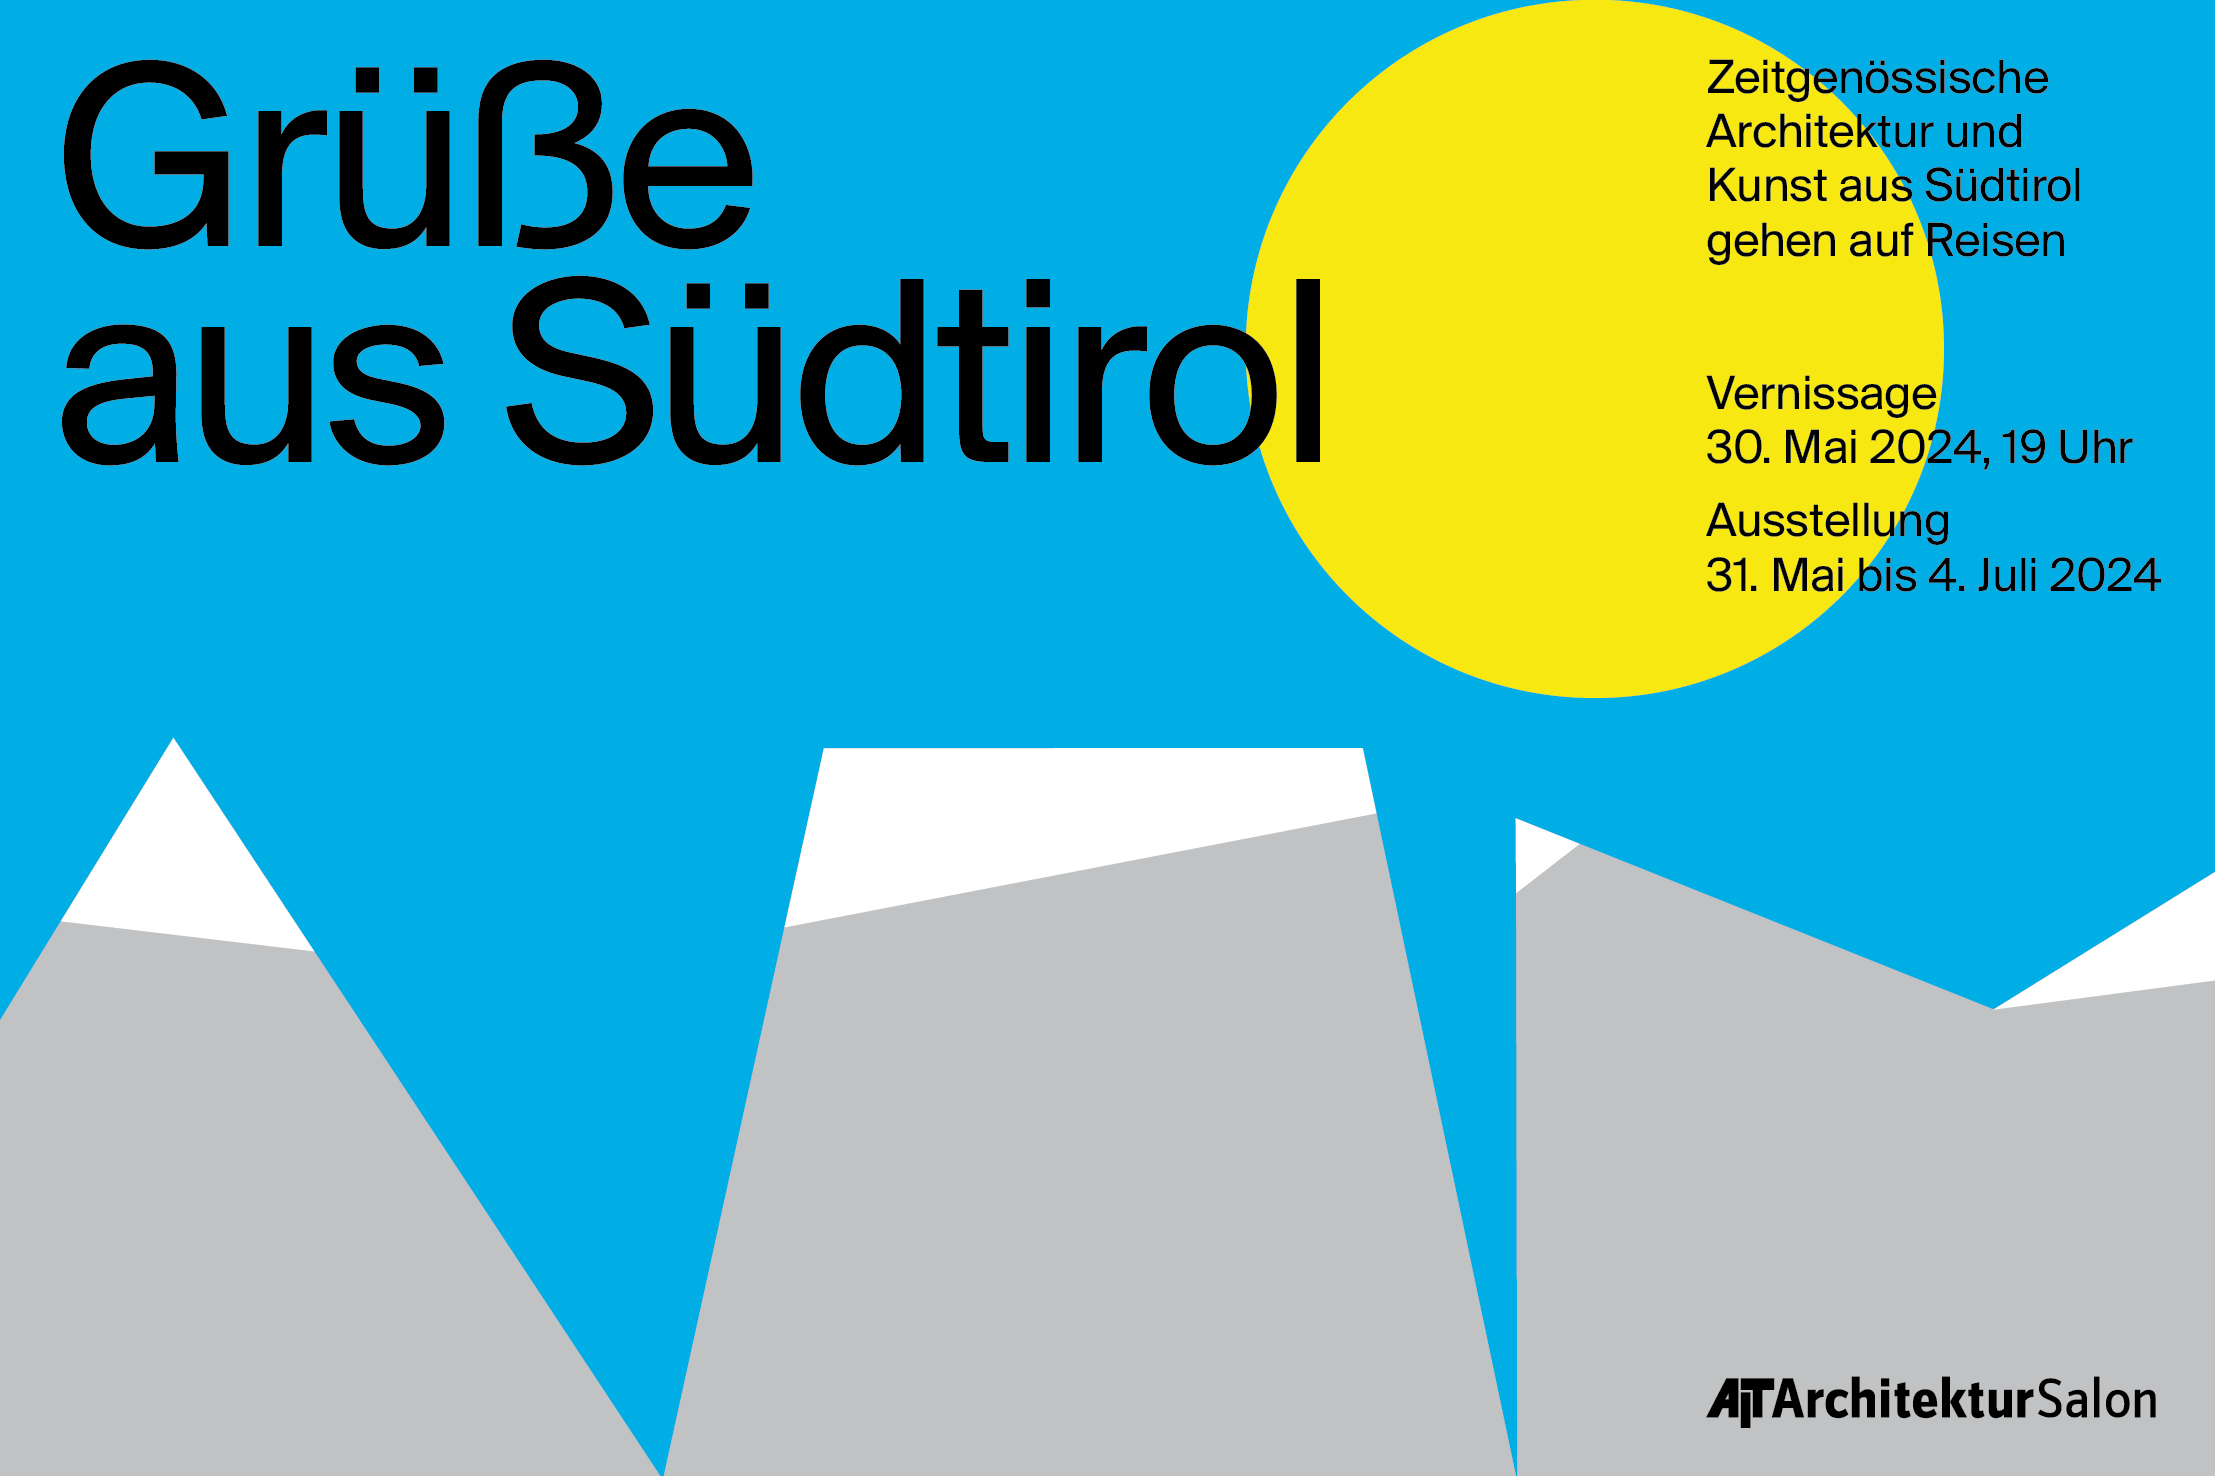 Ausstellung "Grüße aus Südtirol! - Zeitgenössische Architektur und Kunst aus Südtirol gehen auf Reisen"